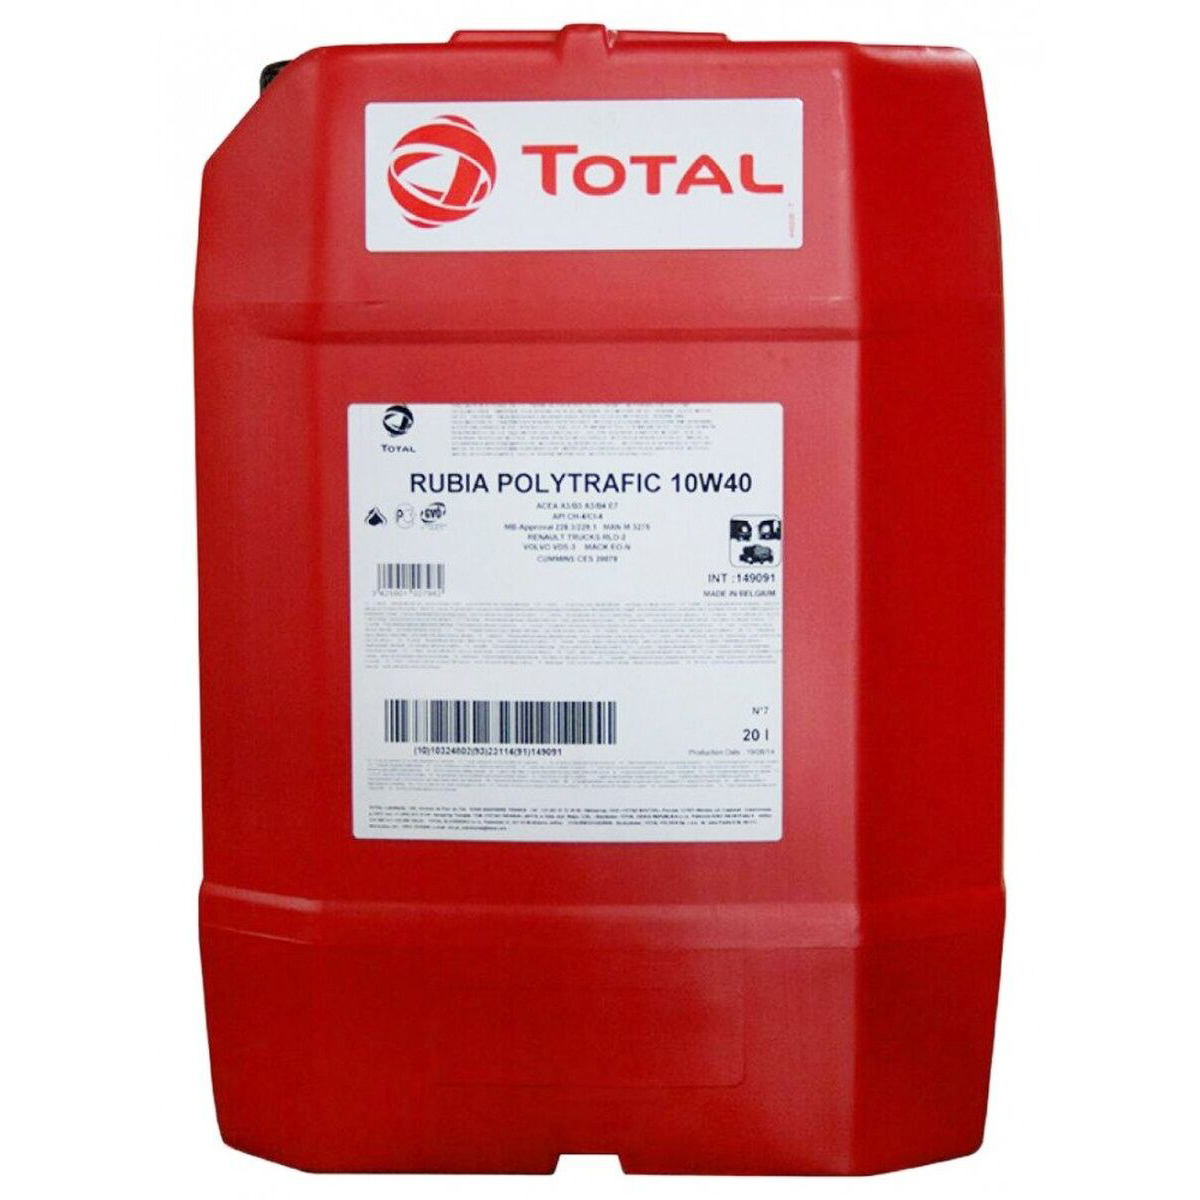 Масло моторное для тяжелых условий эксплуатации Total RUBIA POLYTRAFIC 10W40 20L полусинтетическое